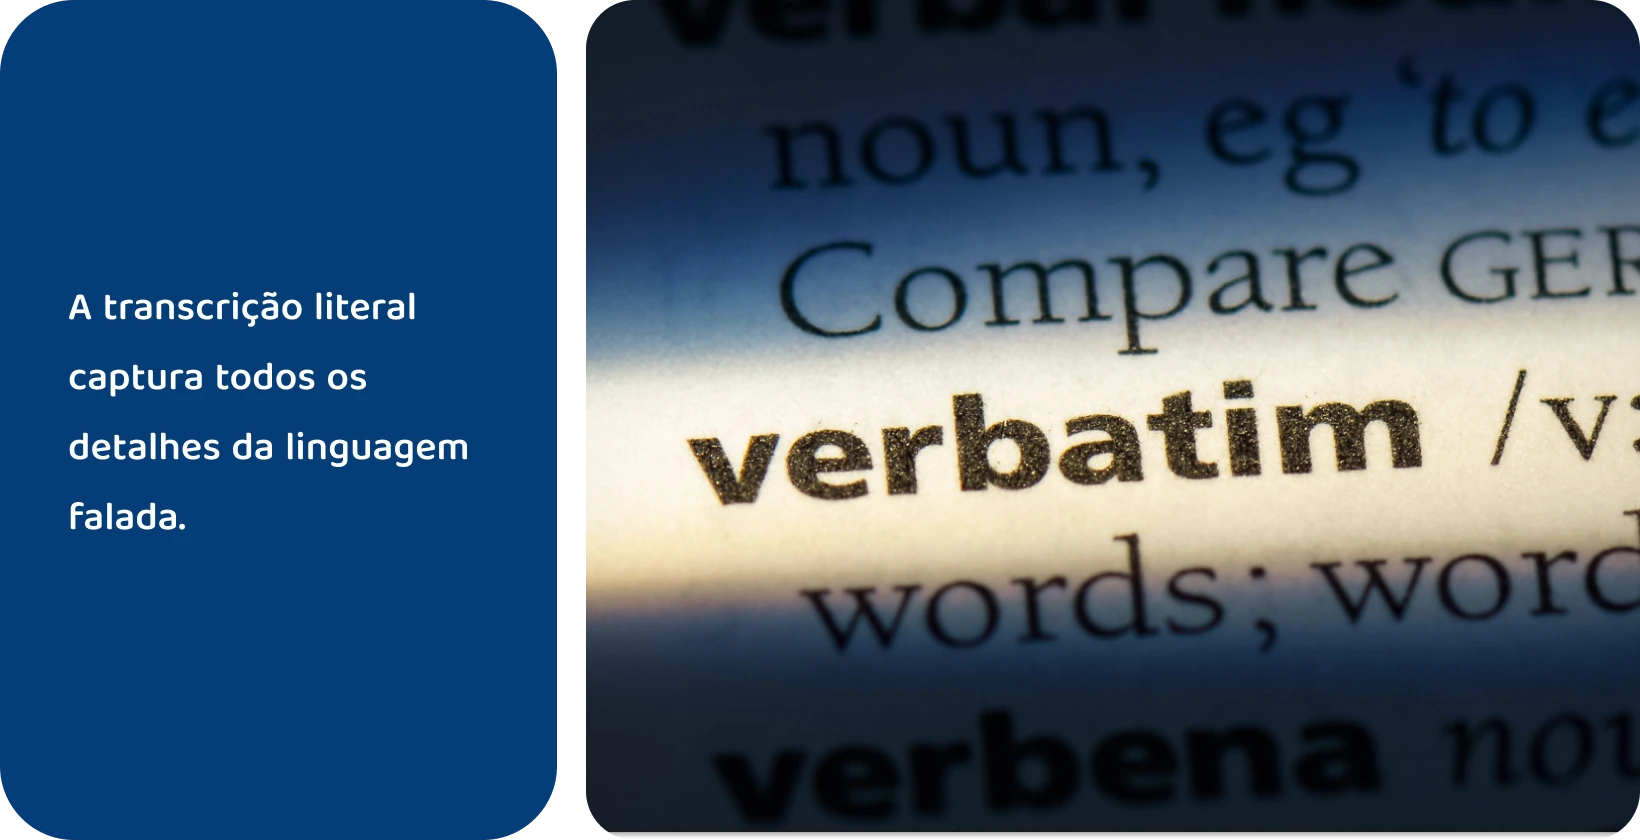 Entrada no dicionário da palavra 'verbatim' destacada, representando métodos precisos de transcrição.